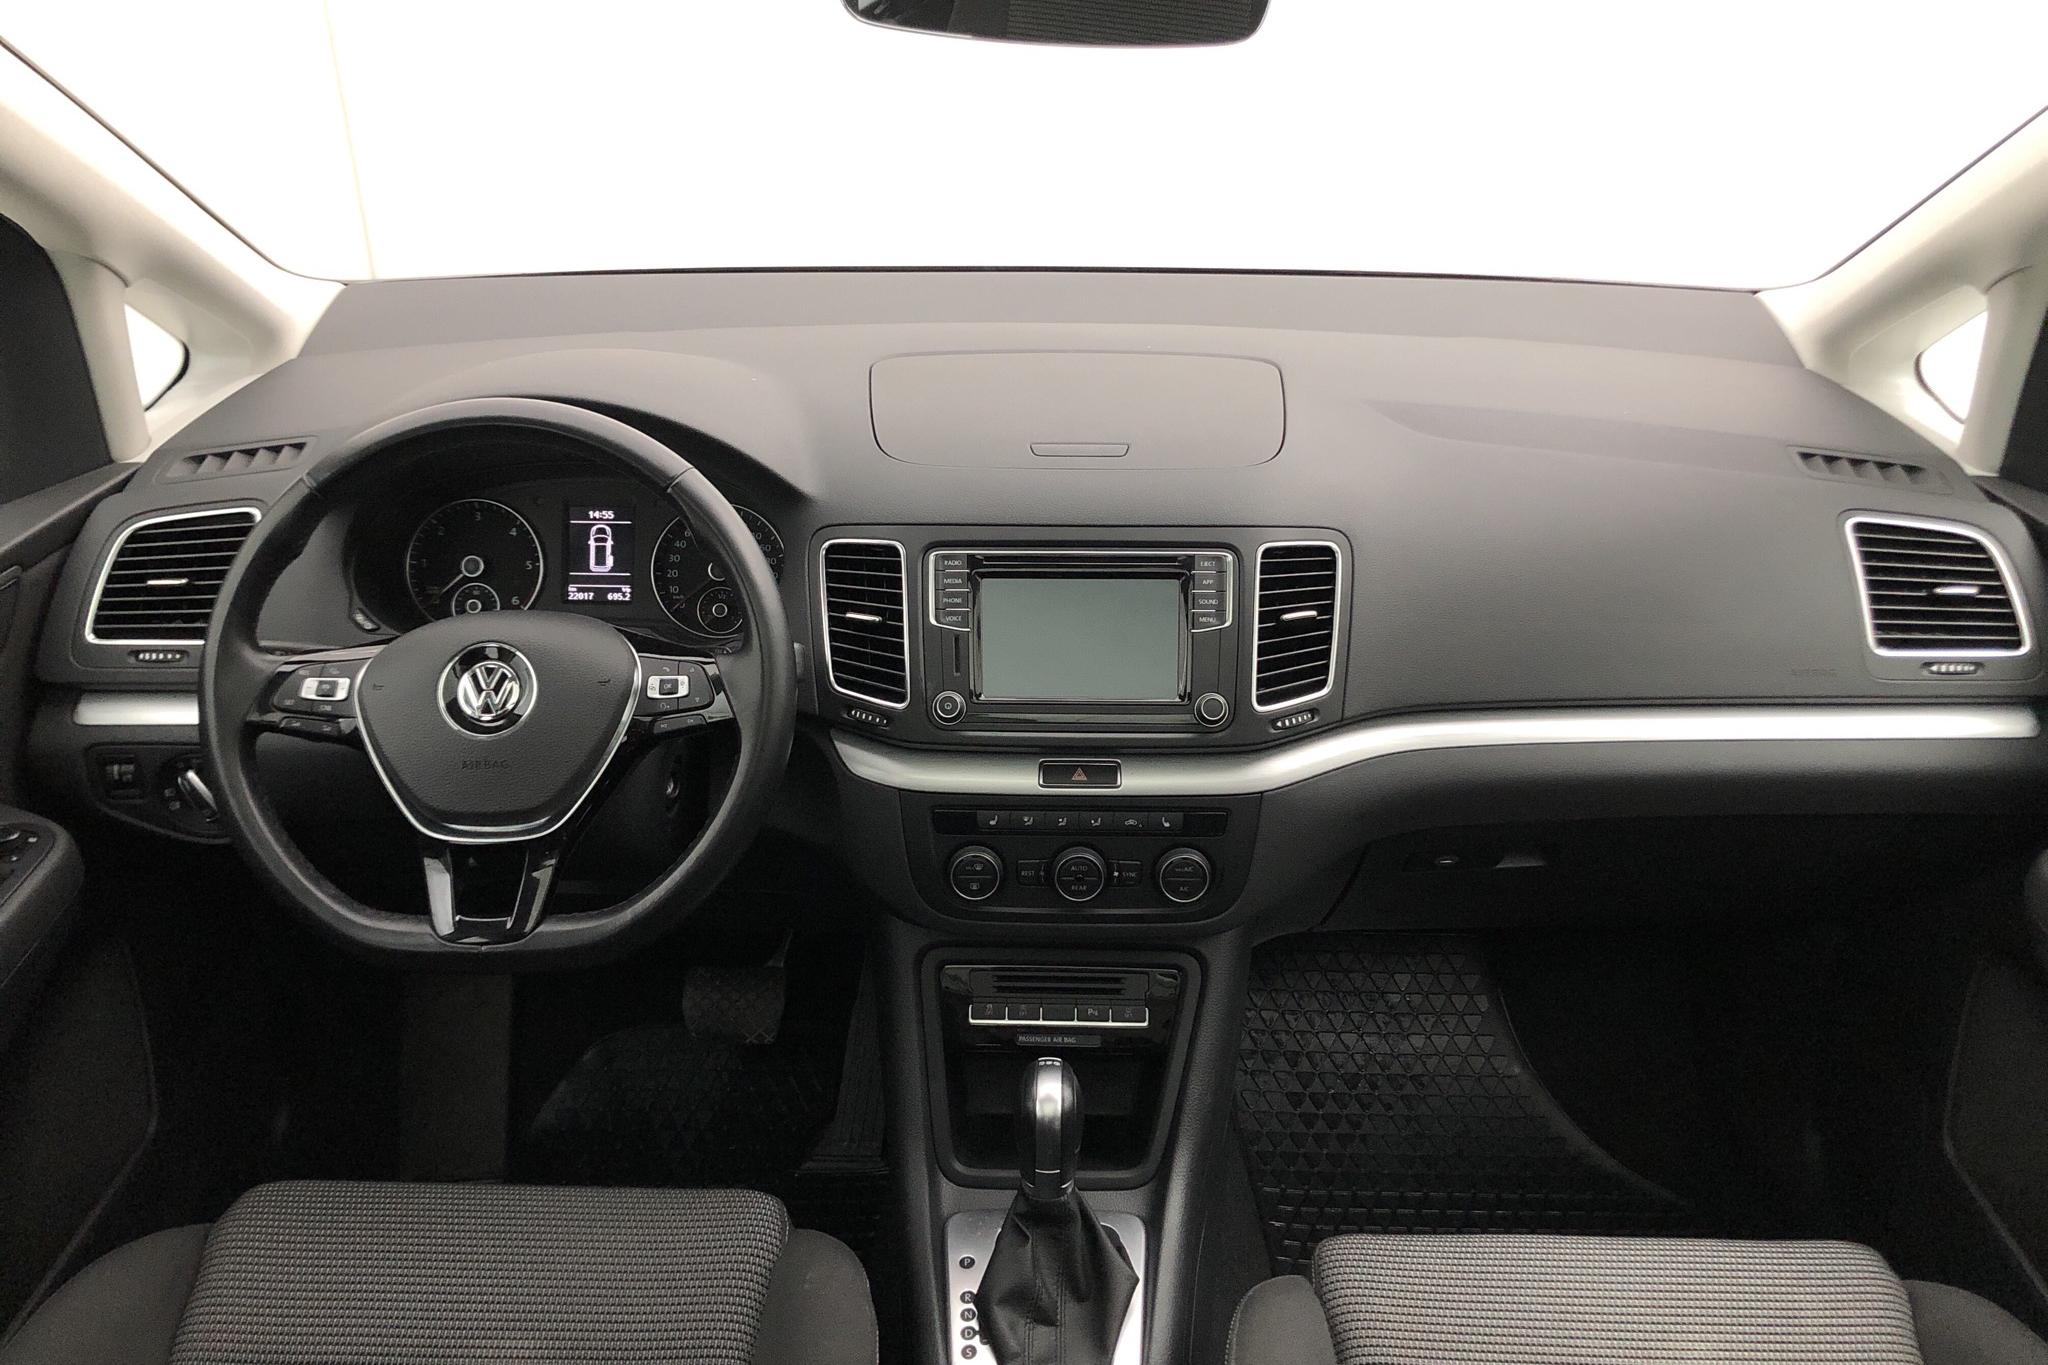 VW Sharan 2.0 TDI (150hk) - 22 020 km - Automatic - silver - 2018